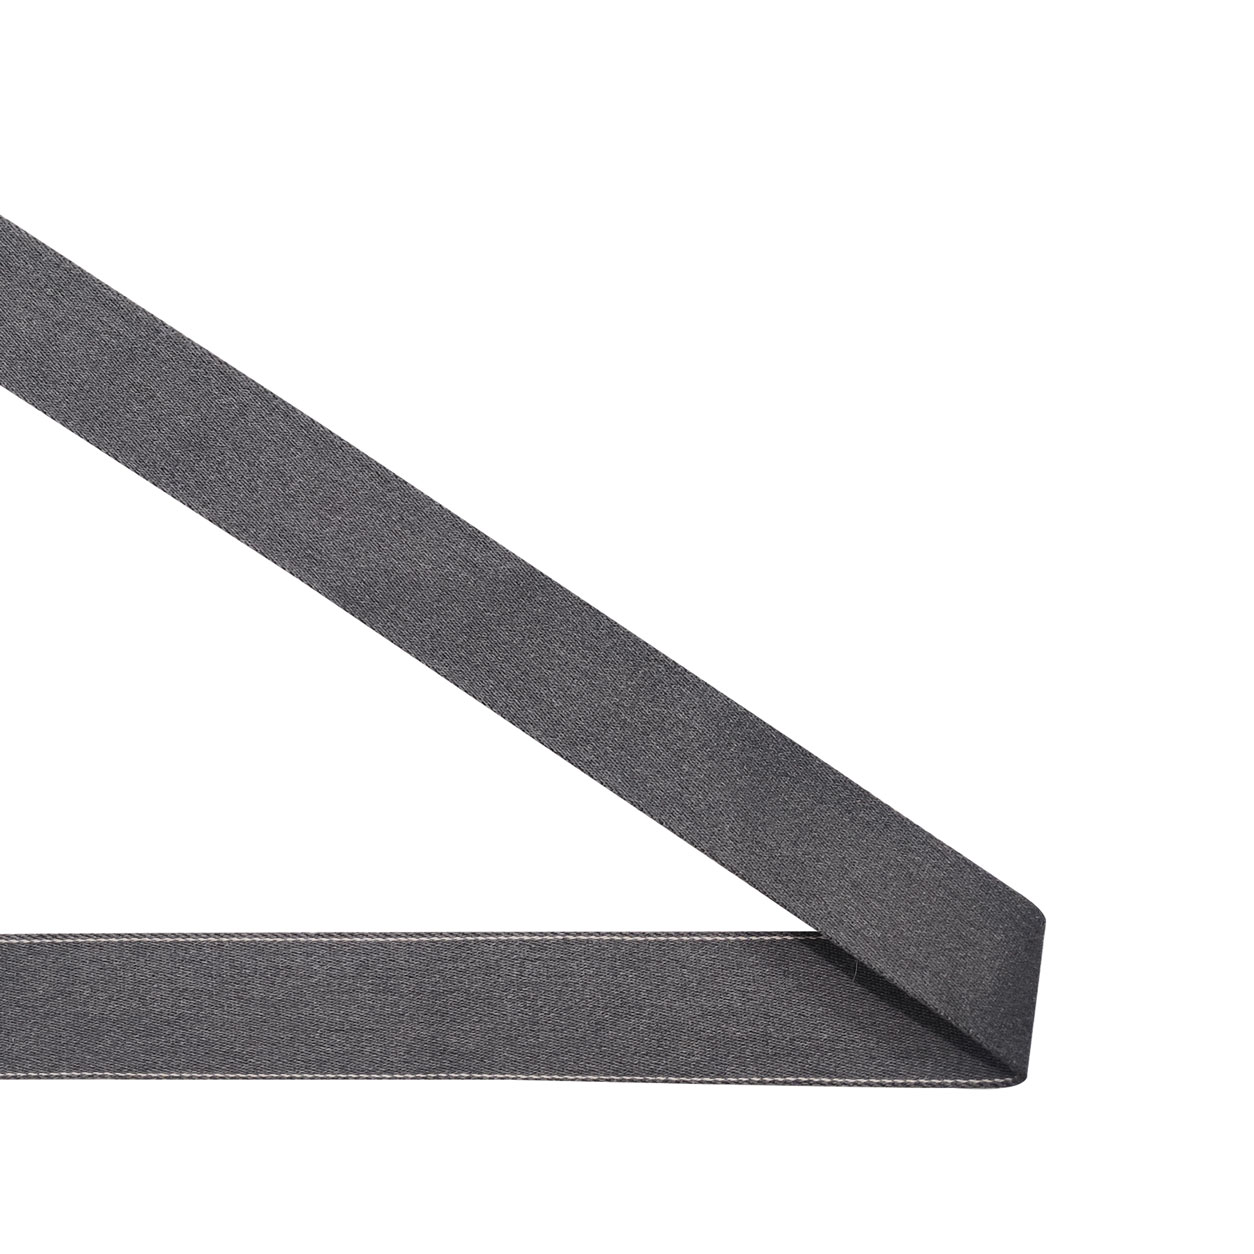 imbracatura zaino di alta qualità colore: nero con maniglia e tracolla Cinghia in cotone da 3 metri 3 cm Leduc 01 